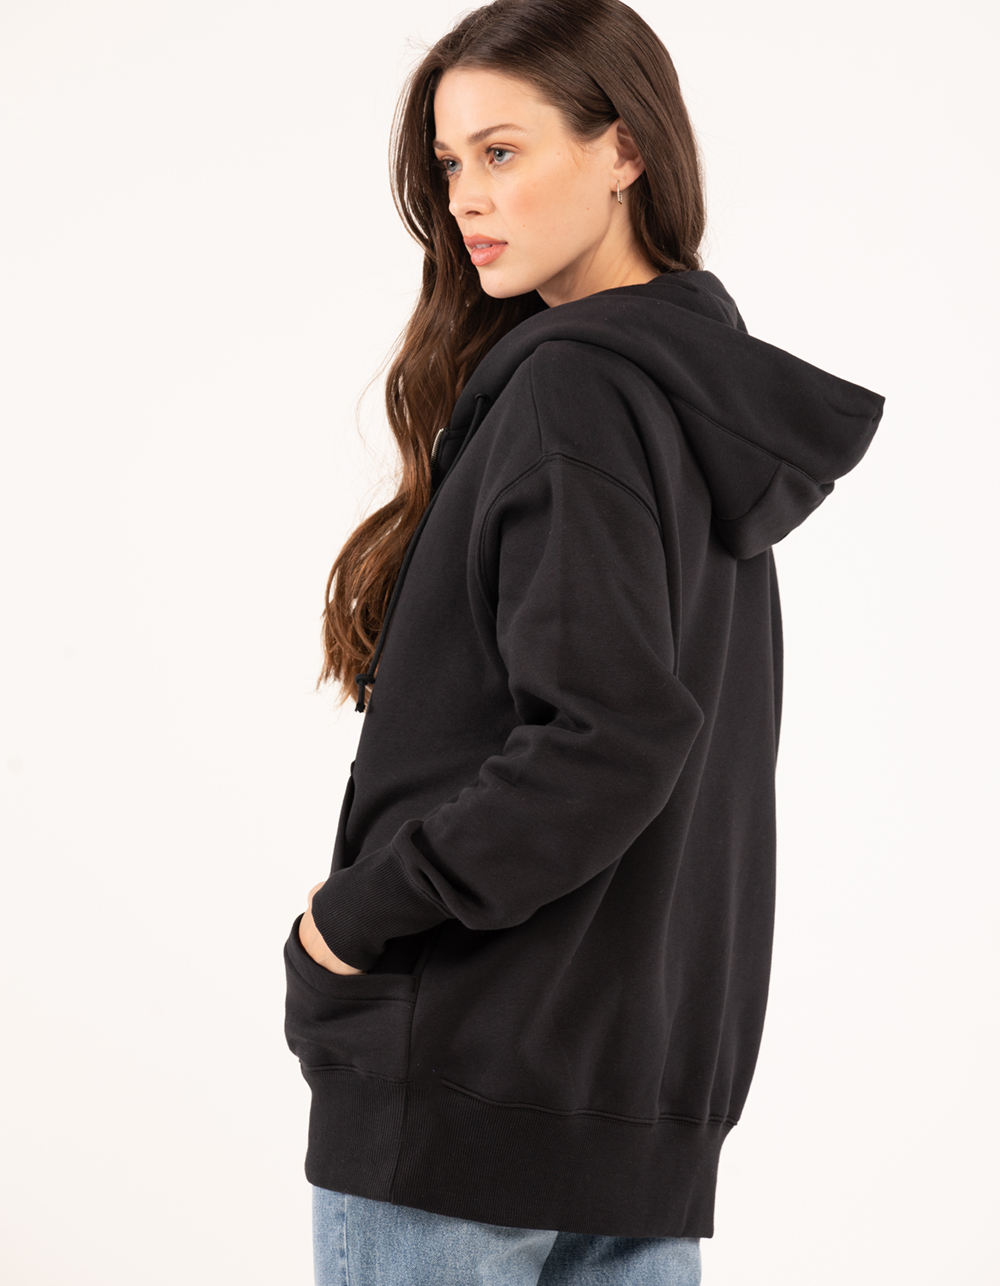 NIKE Sportswear Phoenix Fleece Womens Oversized Zip-Up Hoodie - BLACK